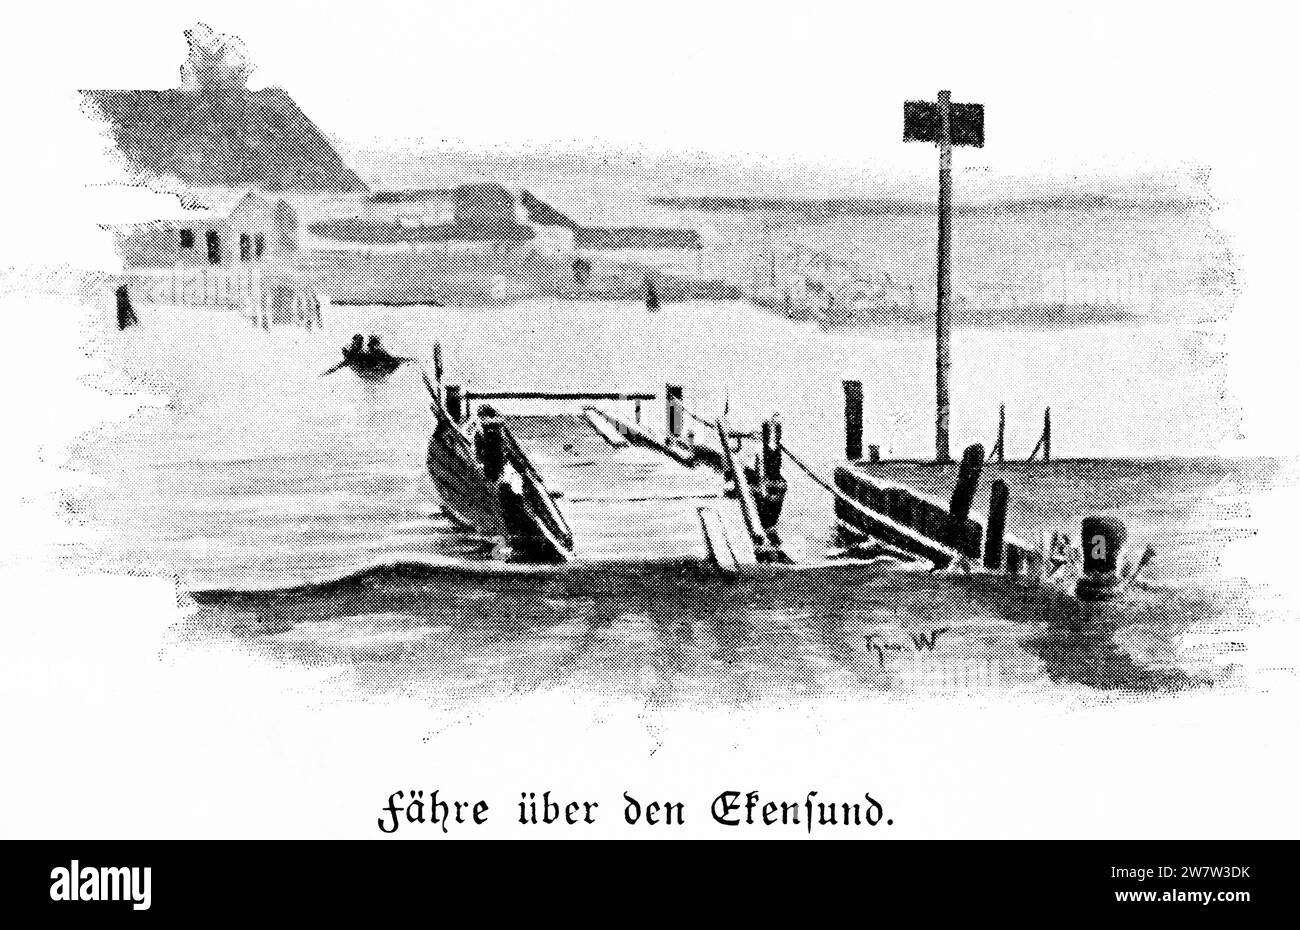 Ferry à travers Egernsund ou Ekensund, totay Danemark, sur le fjord de Flensburg, Schleswig-Holstein, Allemagne du Nord, Illustration historique 1896 Banque D'Images